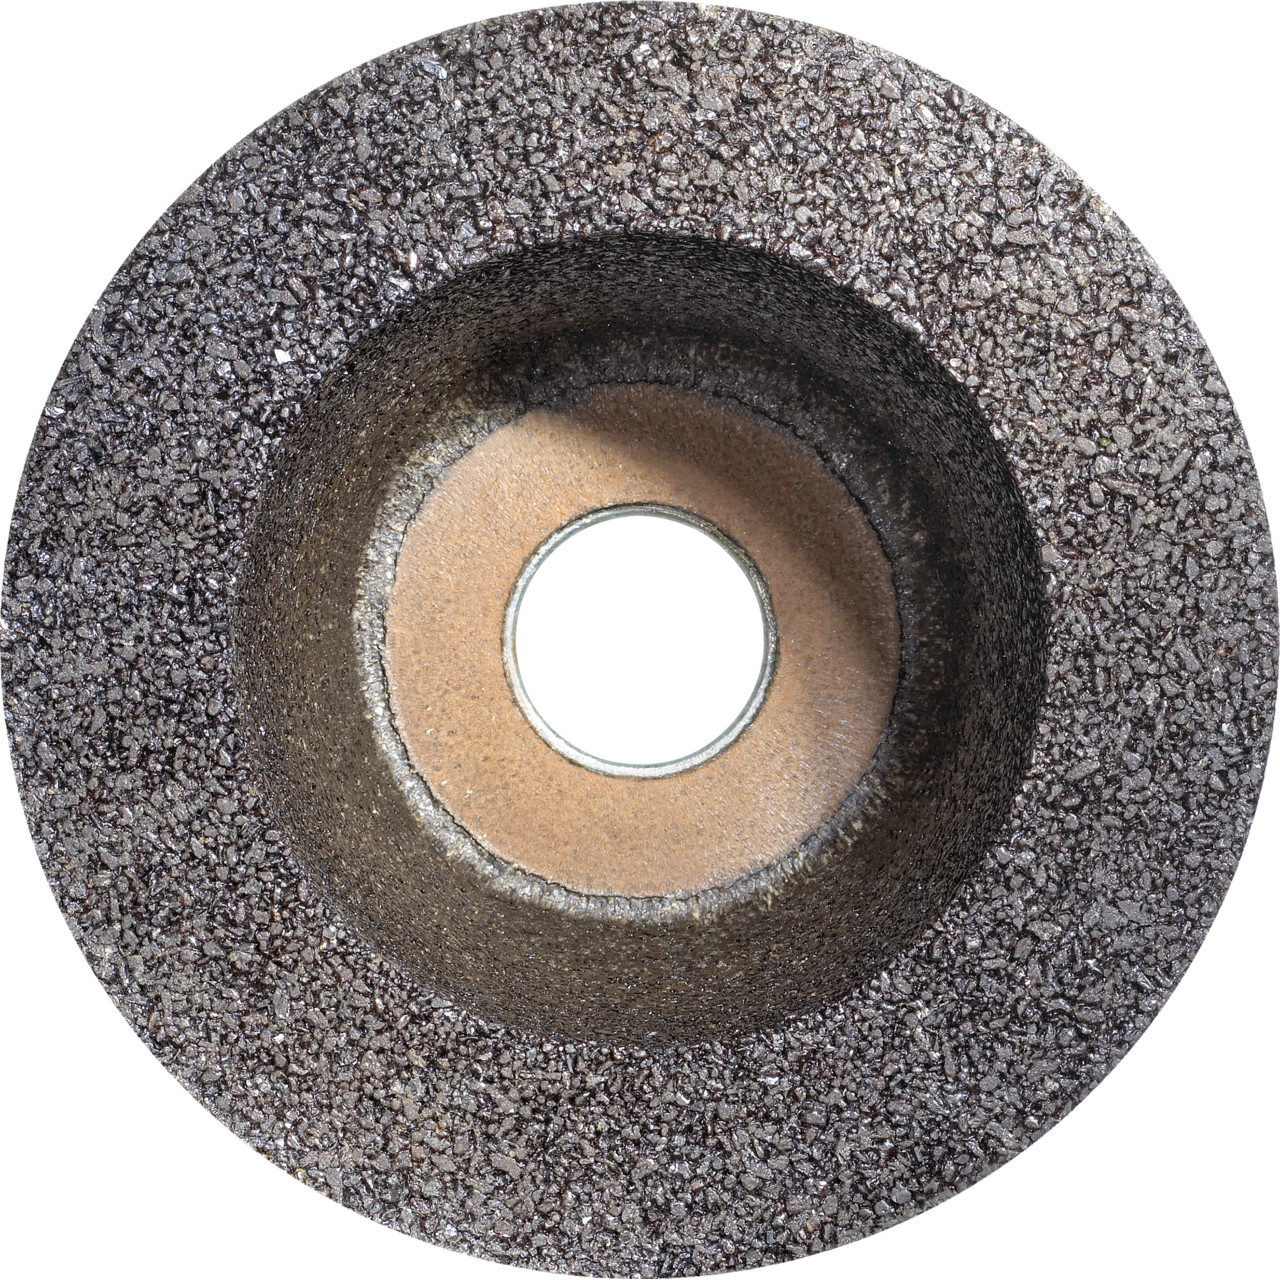 Tazza in resina sintetica Tyrolit D/JxDxH 110/90x55x22,23 Per pietra, forma: ruota a tazza 11BT, Art. 318070